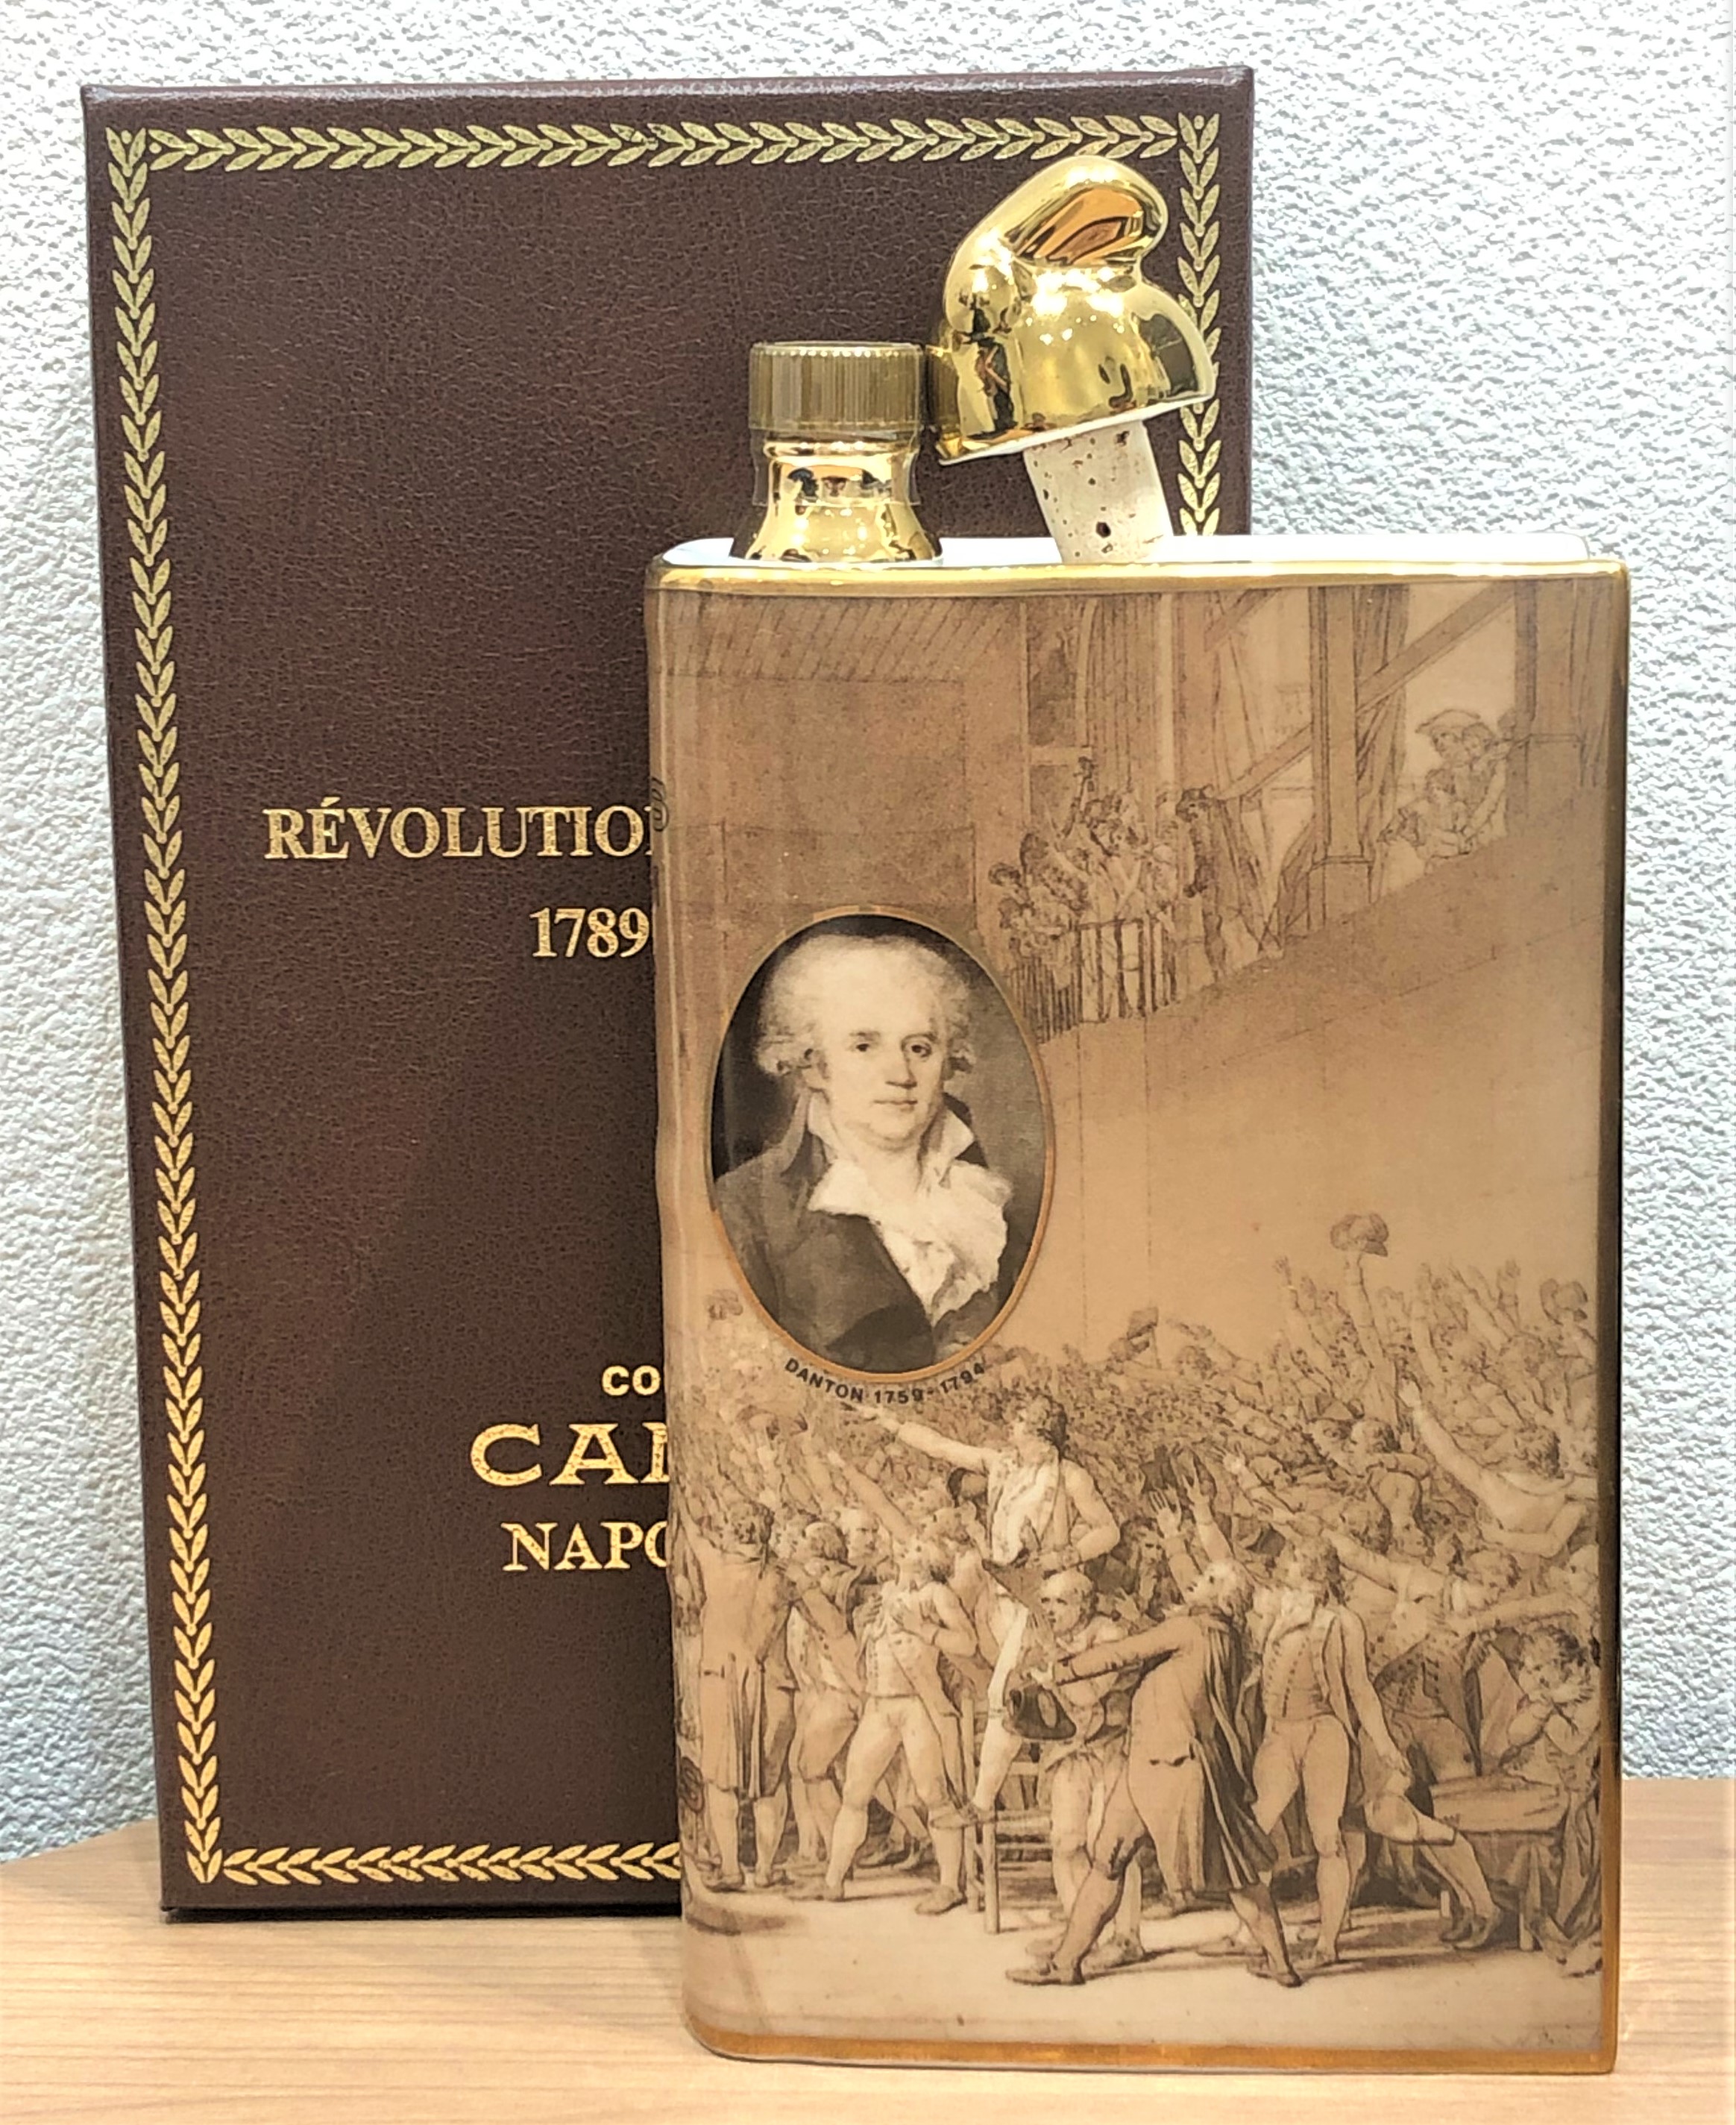 【CAMUS/カミュ】ナポレオン ブック フランス革命 700ml ブランデー